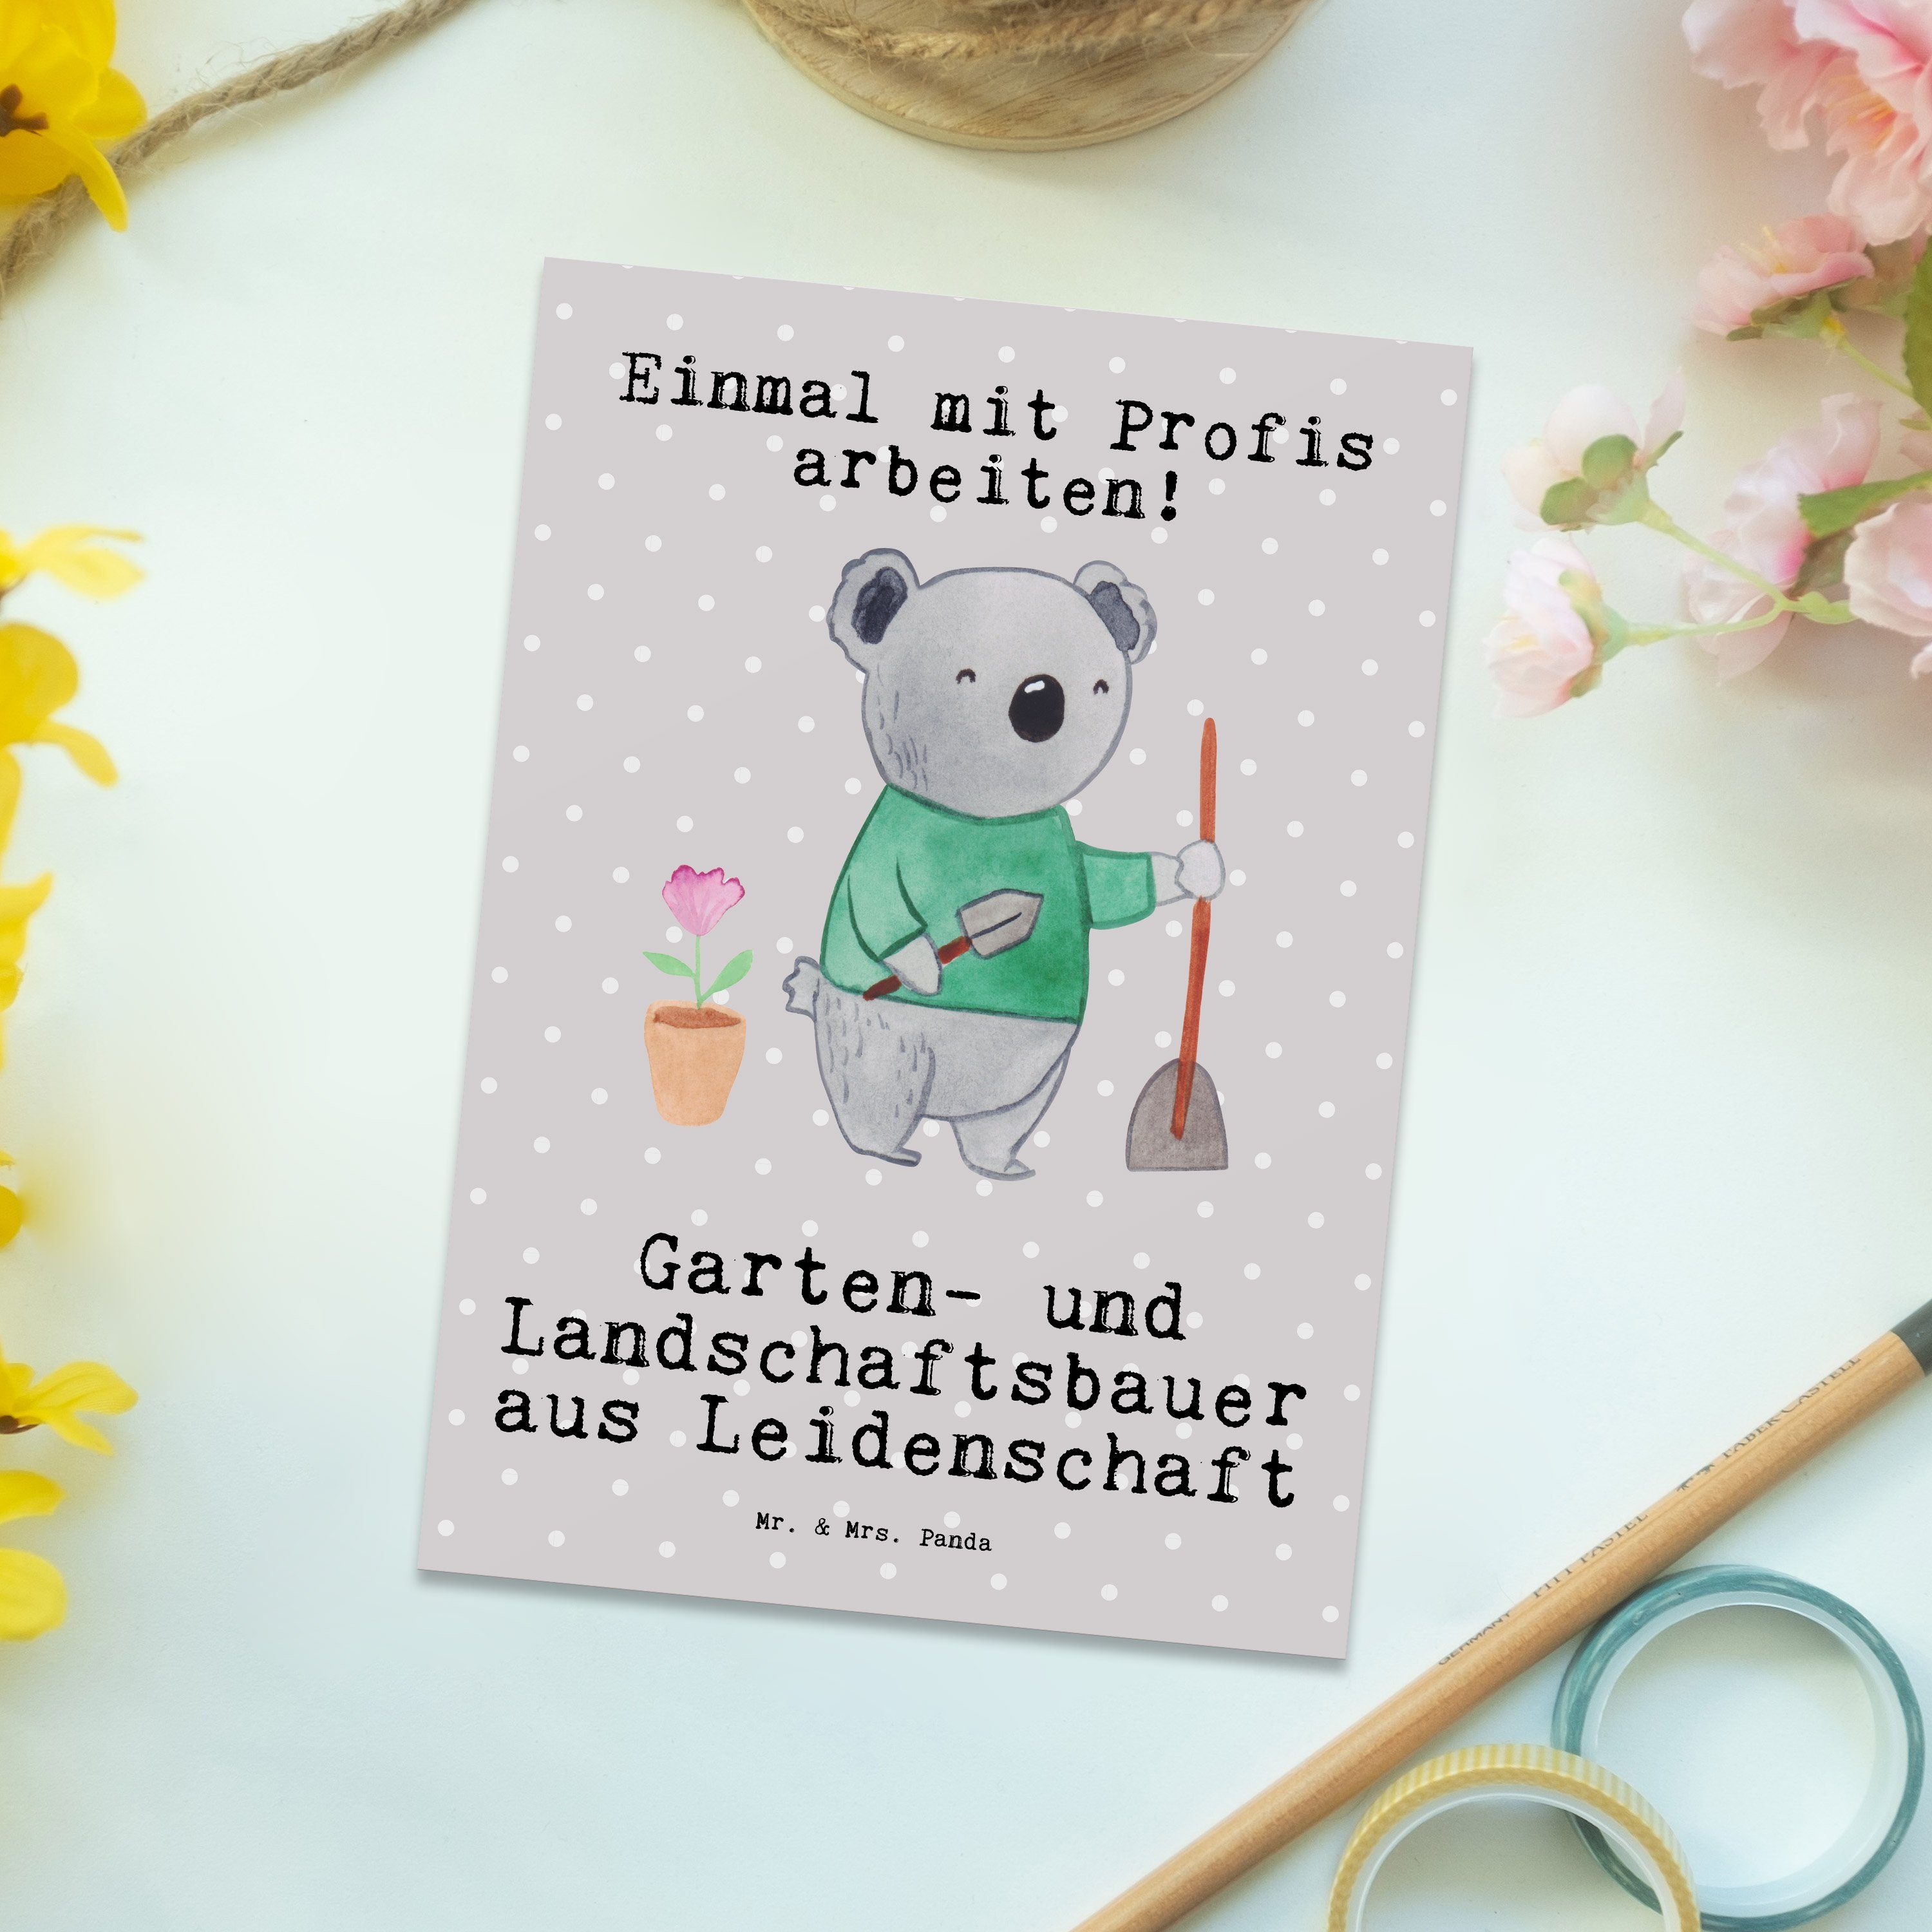 aus Garten- Mrs. Gesche Mr. Panda & - - Pastell Postkarte Landschaftsbauer Grau Leidenschaft und